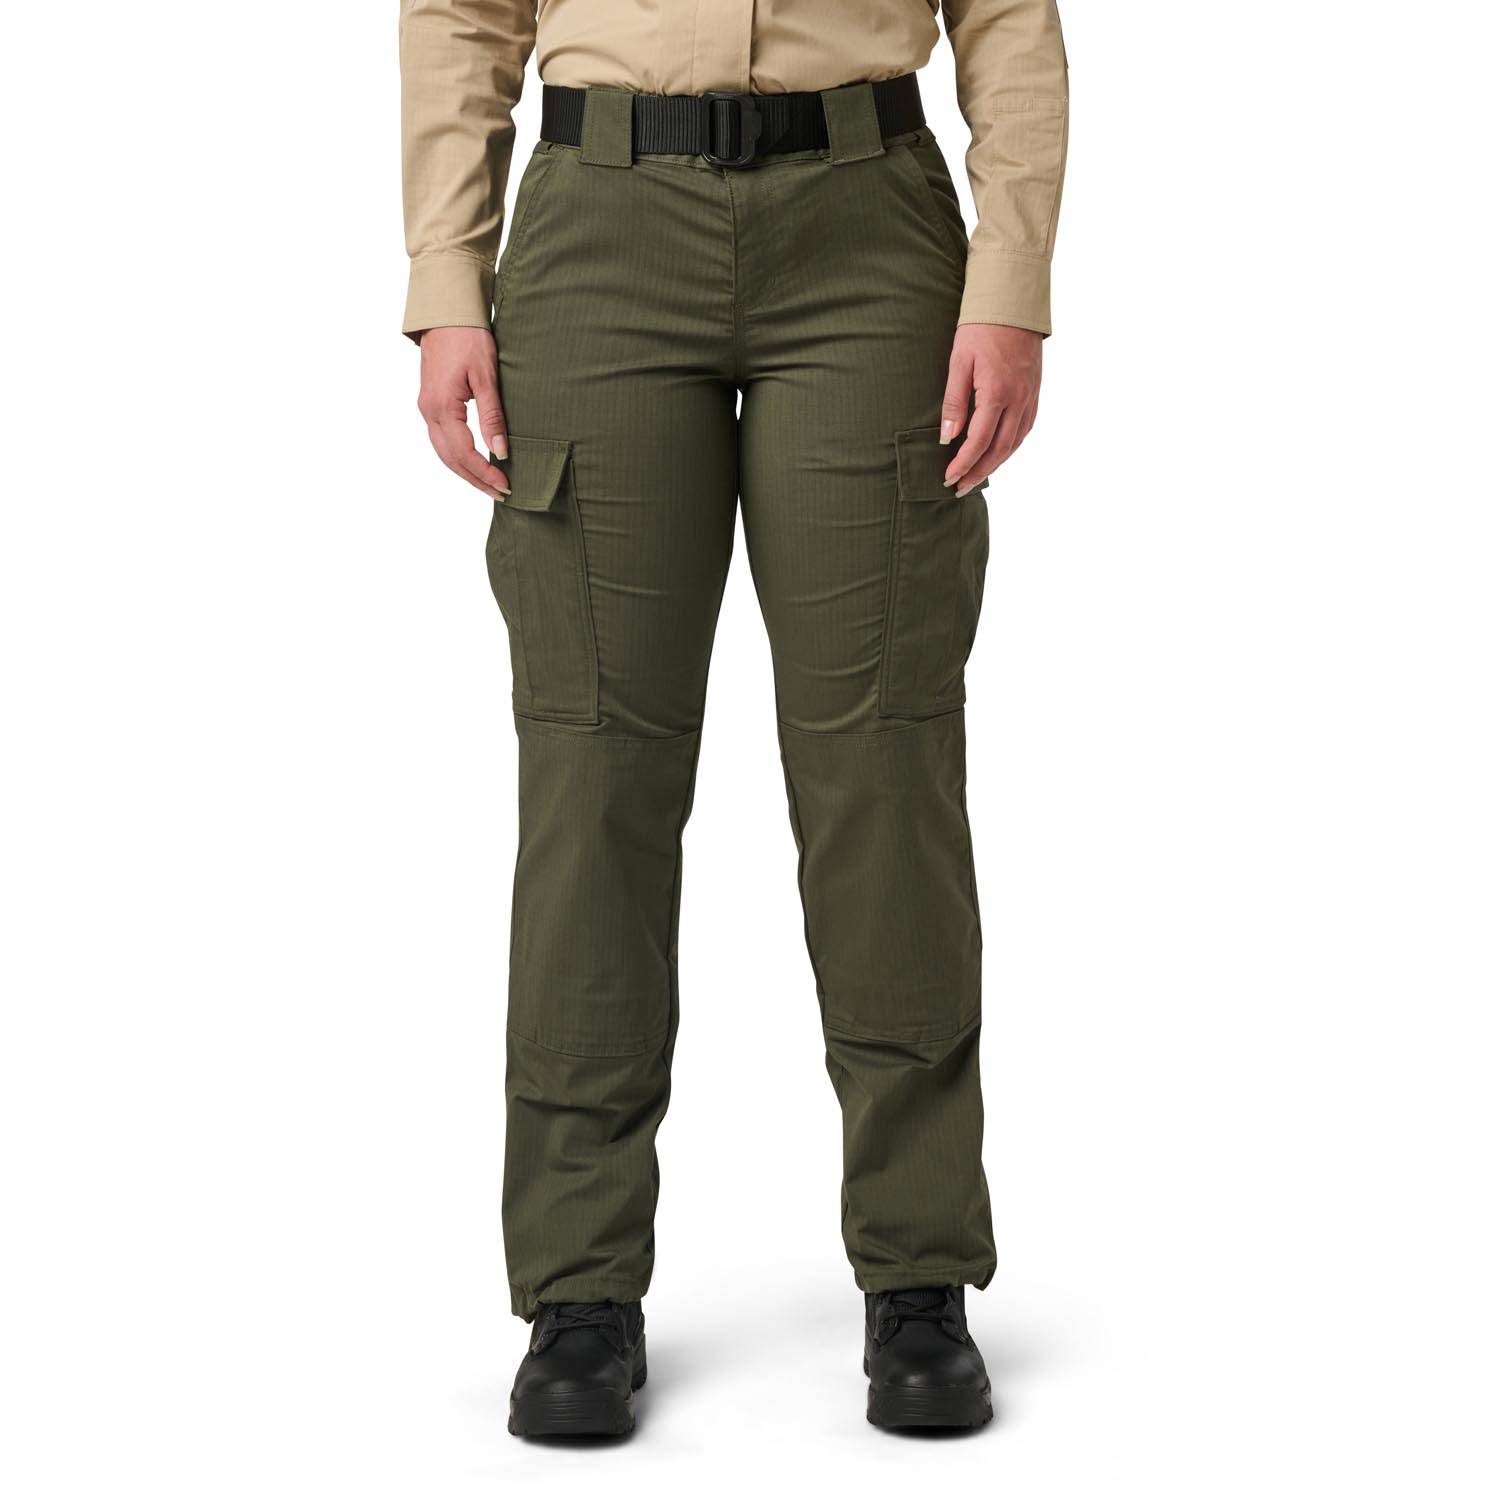 5.11 Tactical Women's Flex-Tac TDU Pants | Galls